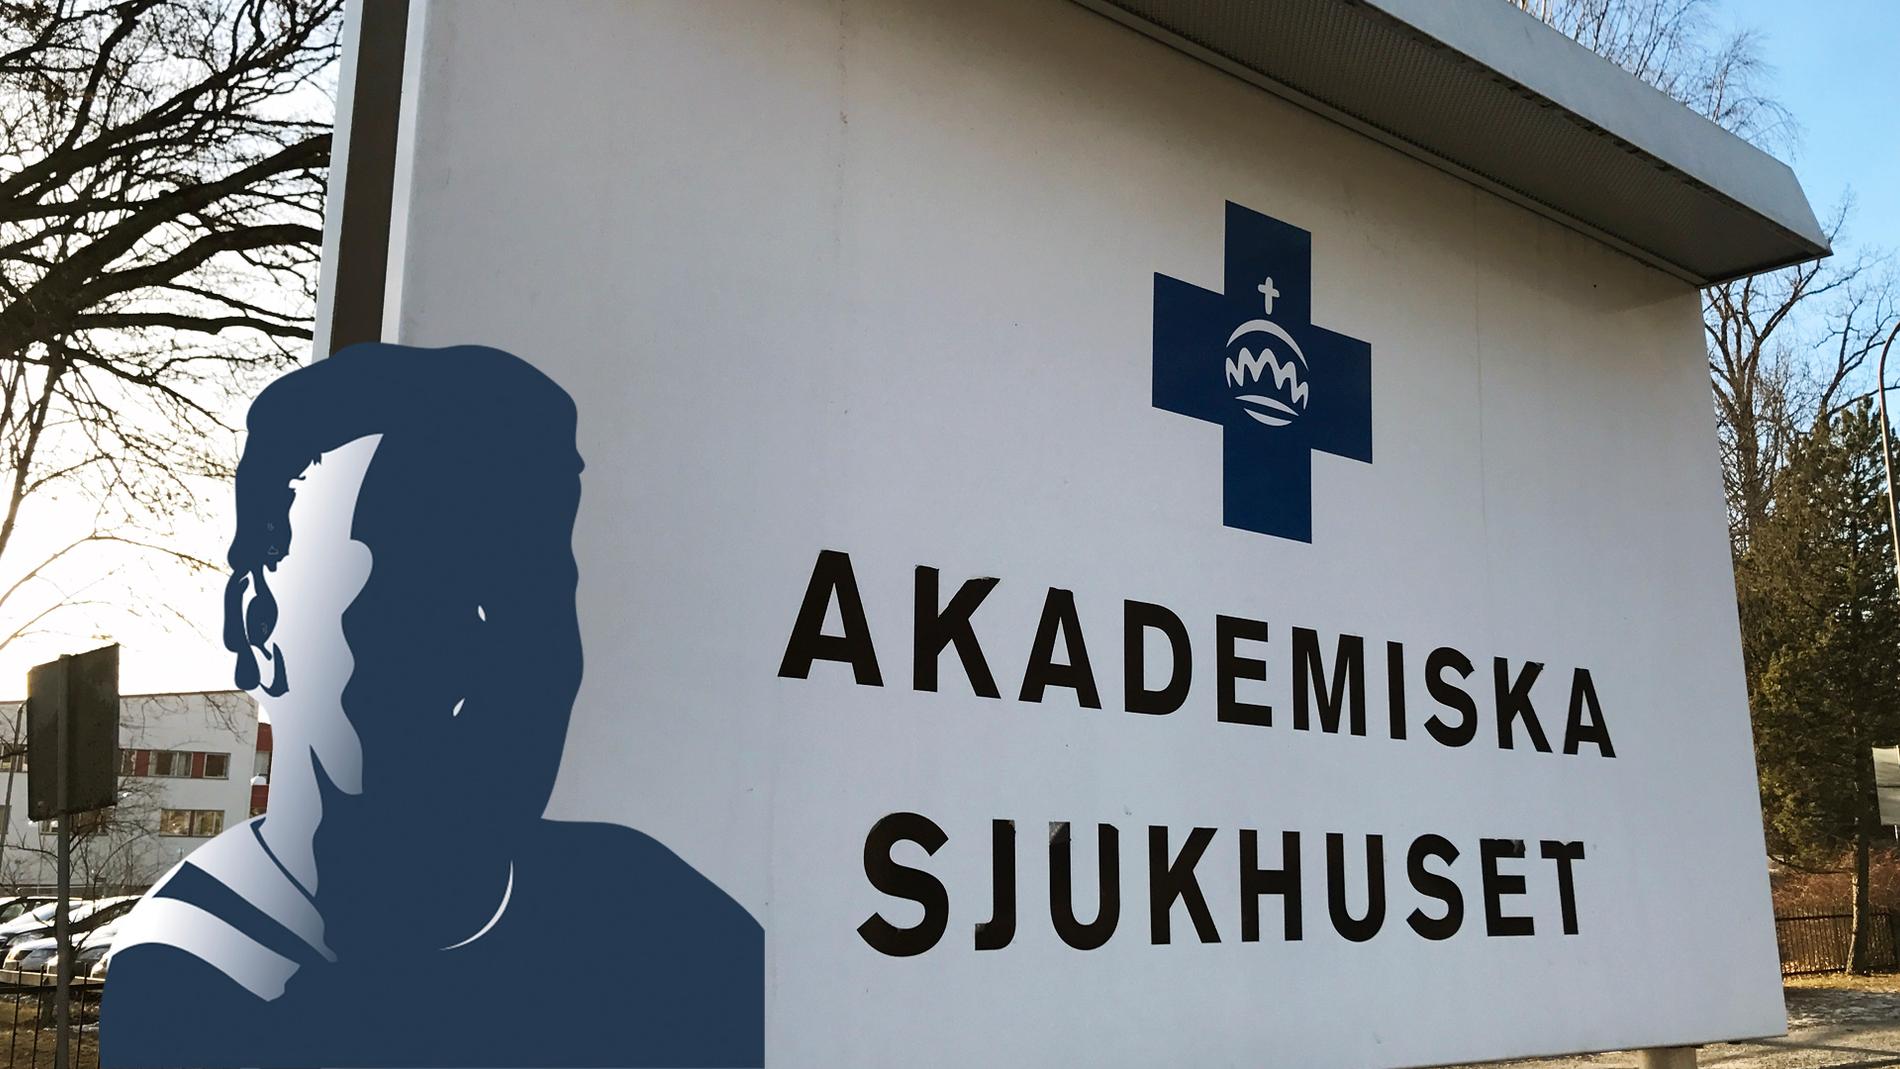 Enligt uppgifter till Aftonbladet har en läkare på Akademiska, nyss hemkommen från norra Italien, gått direkt till jobbet.